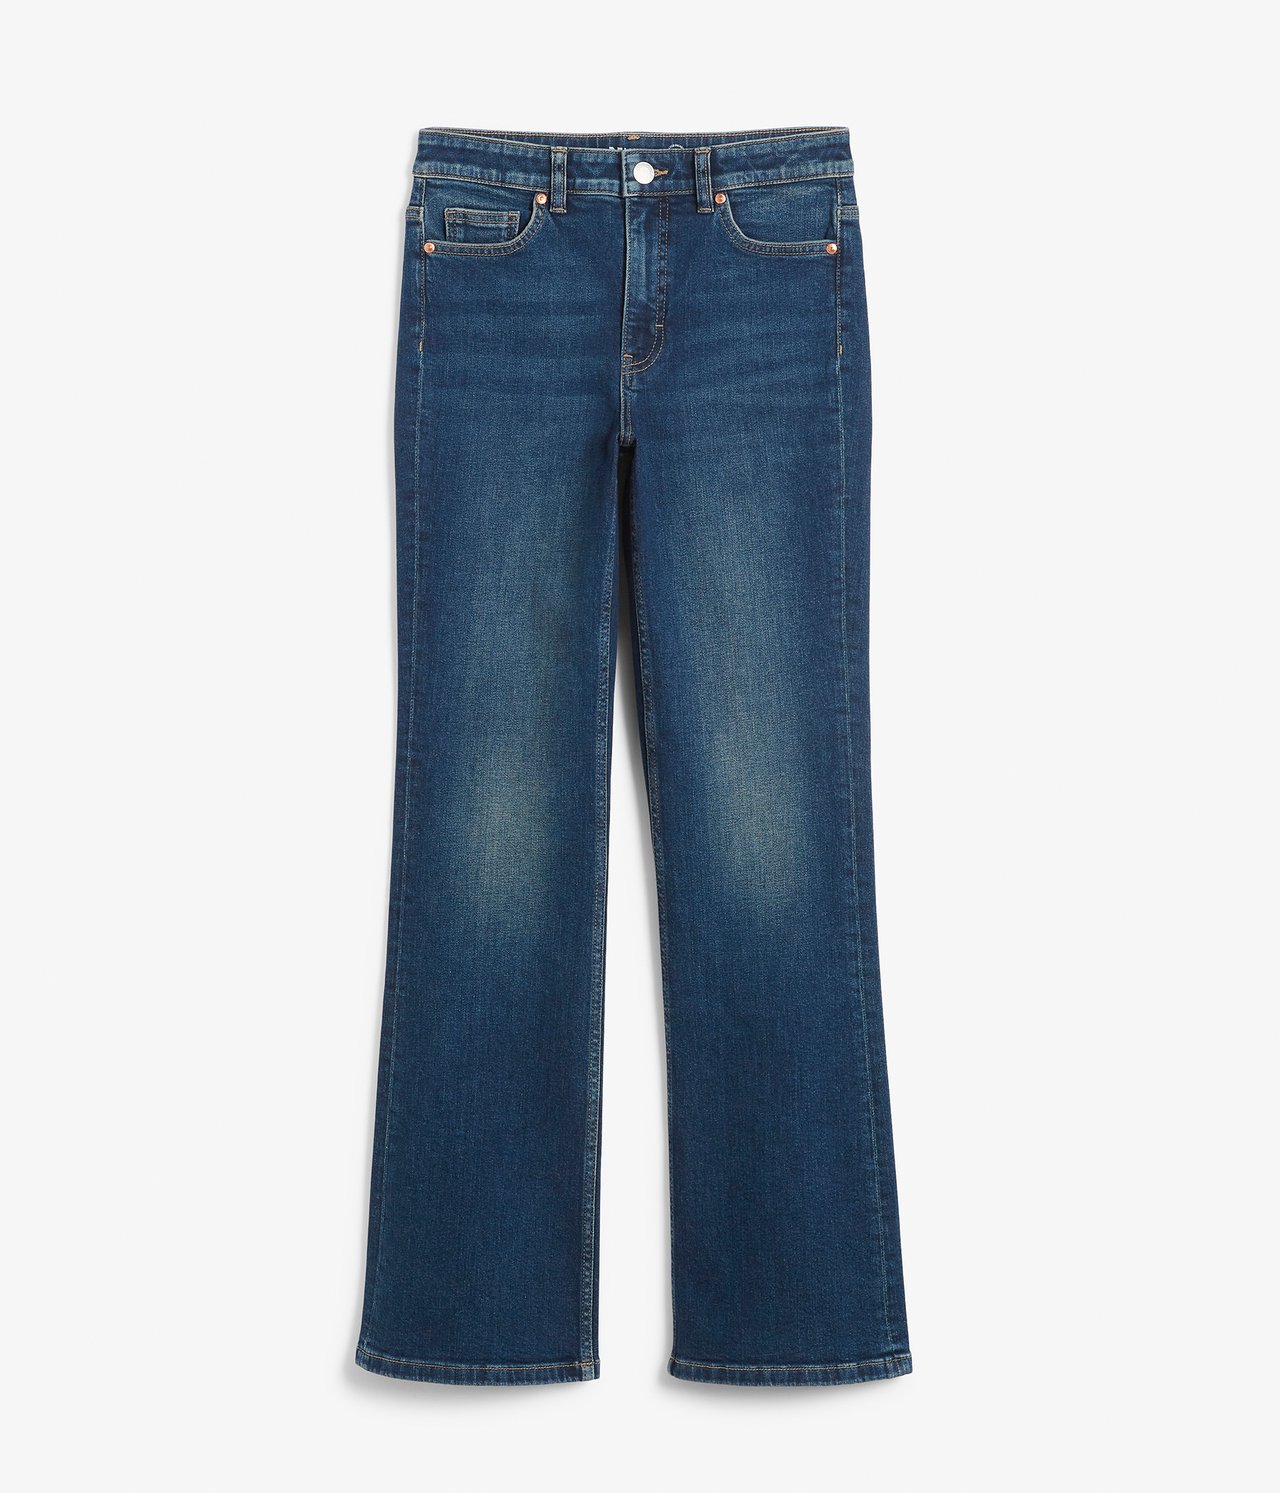 Flare jeans regular waist - Mørk denim - 6